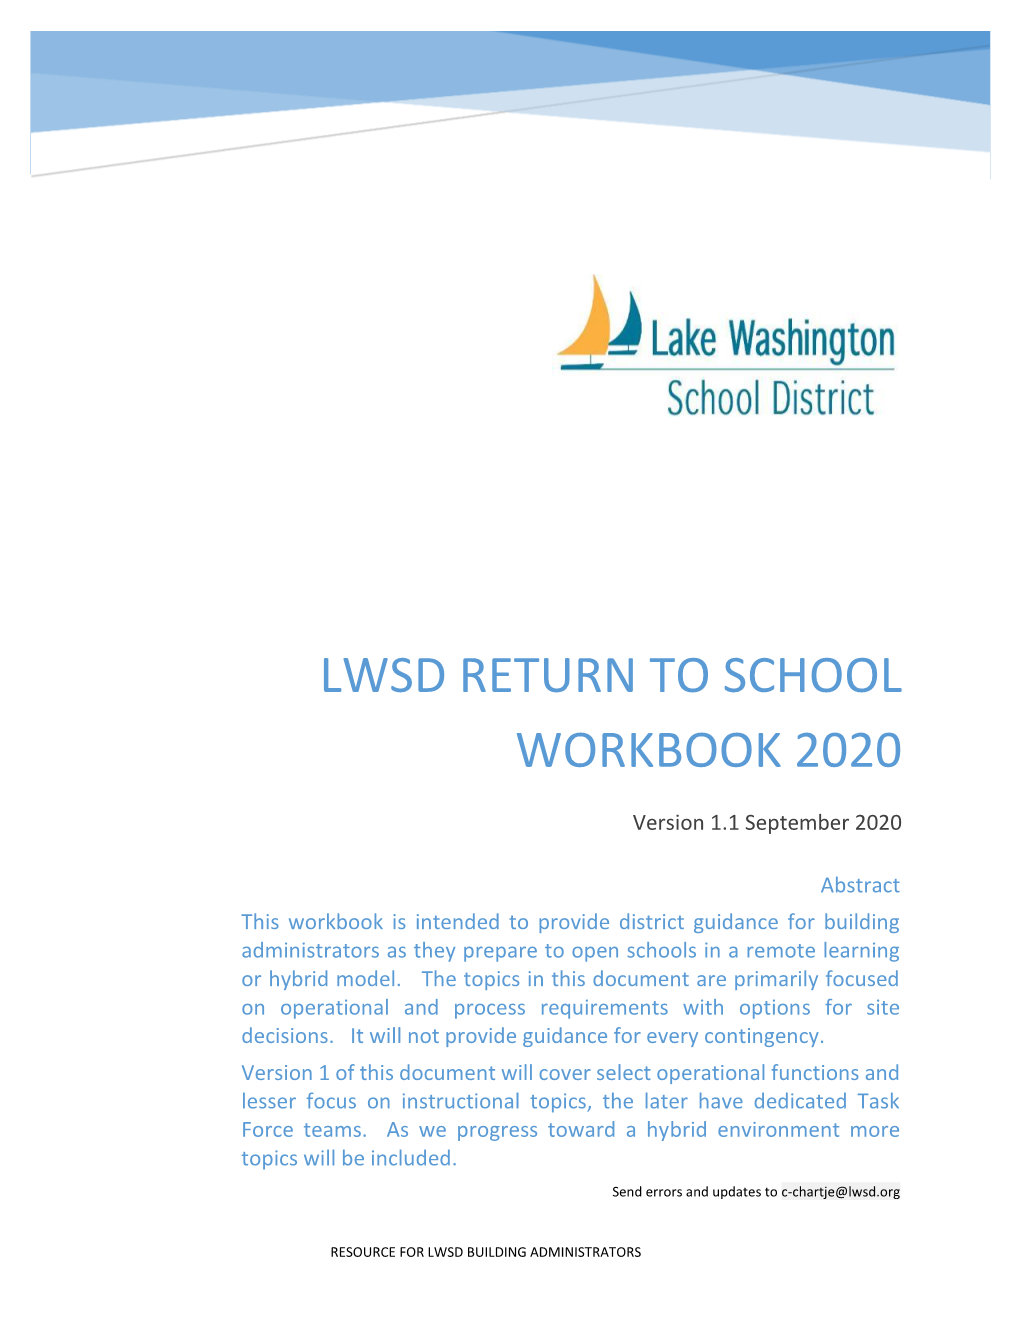 School Workbook for Building Administrators